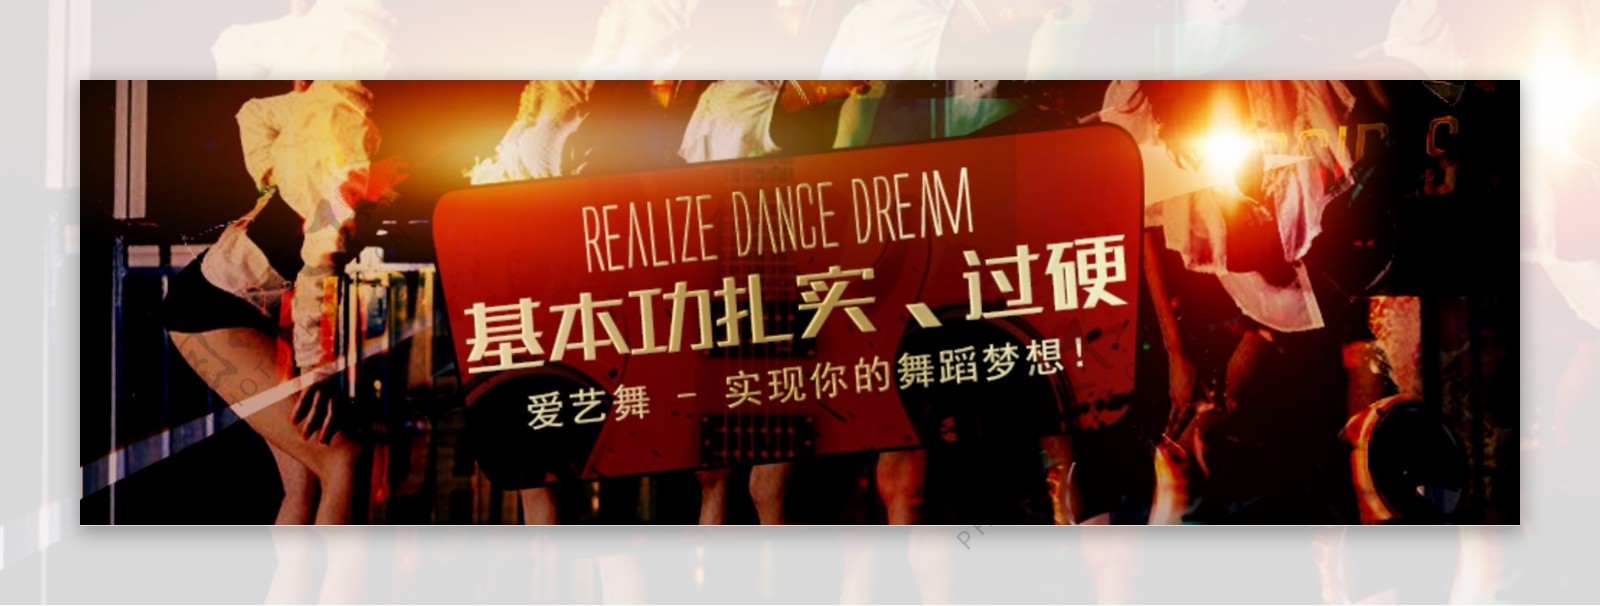 舞蹈培训banner